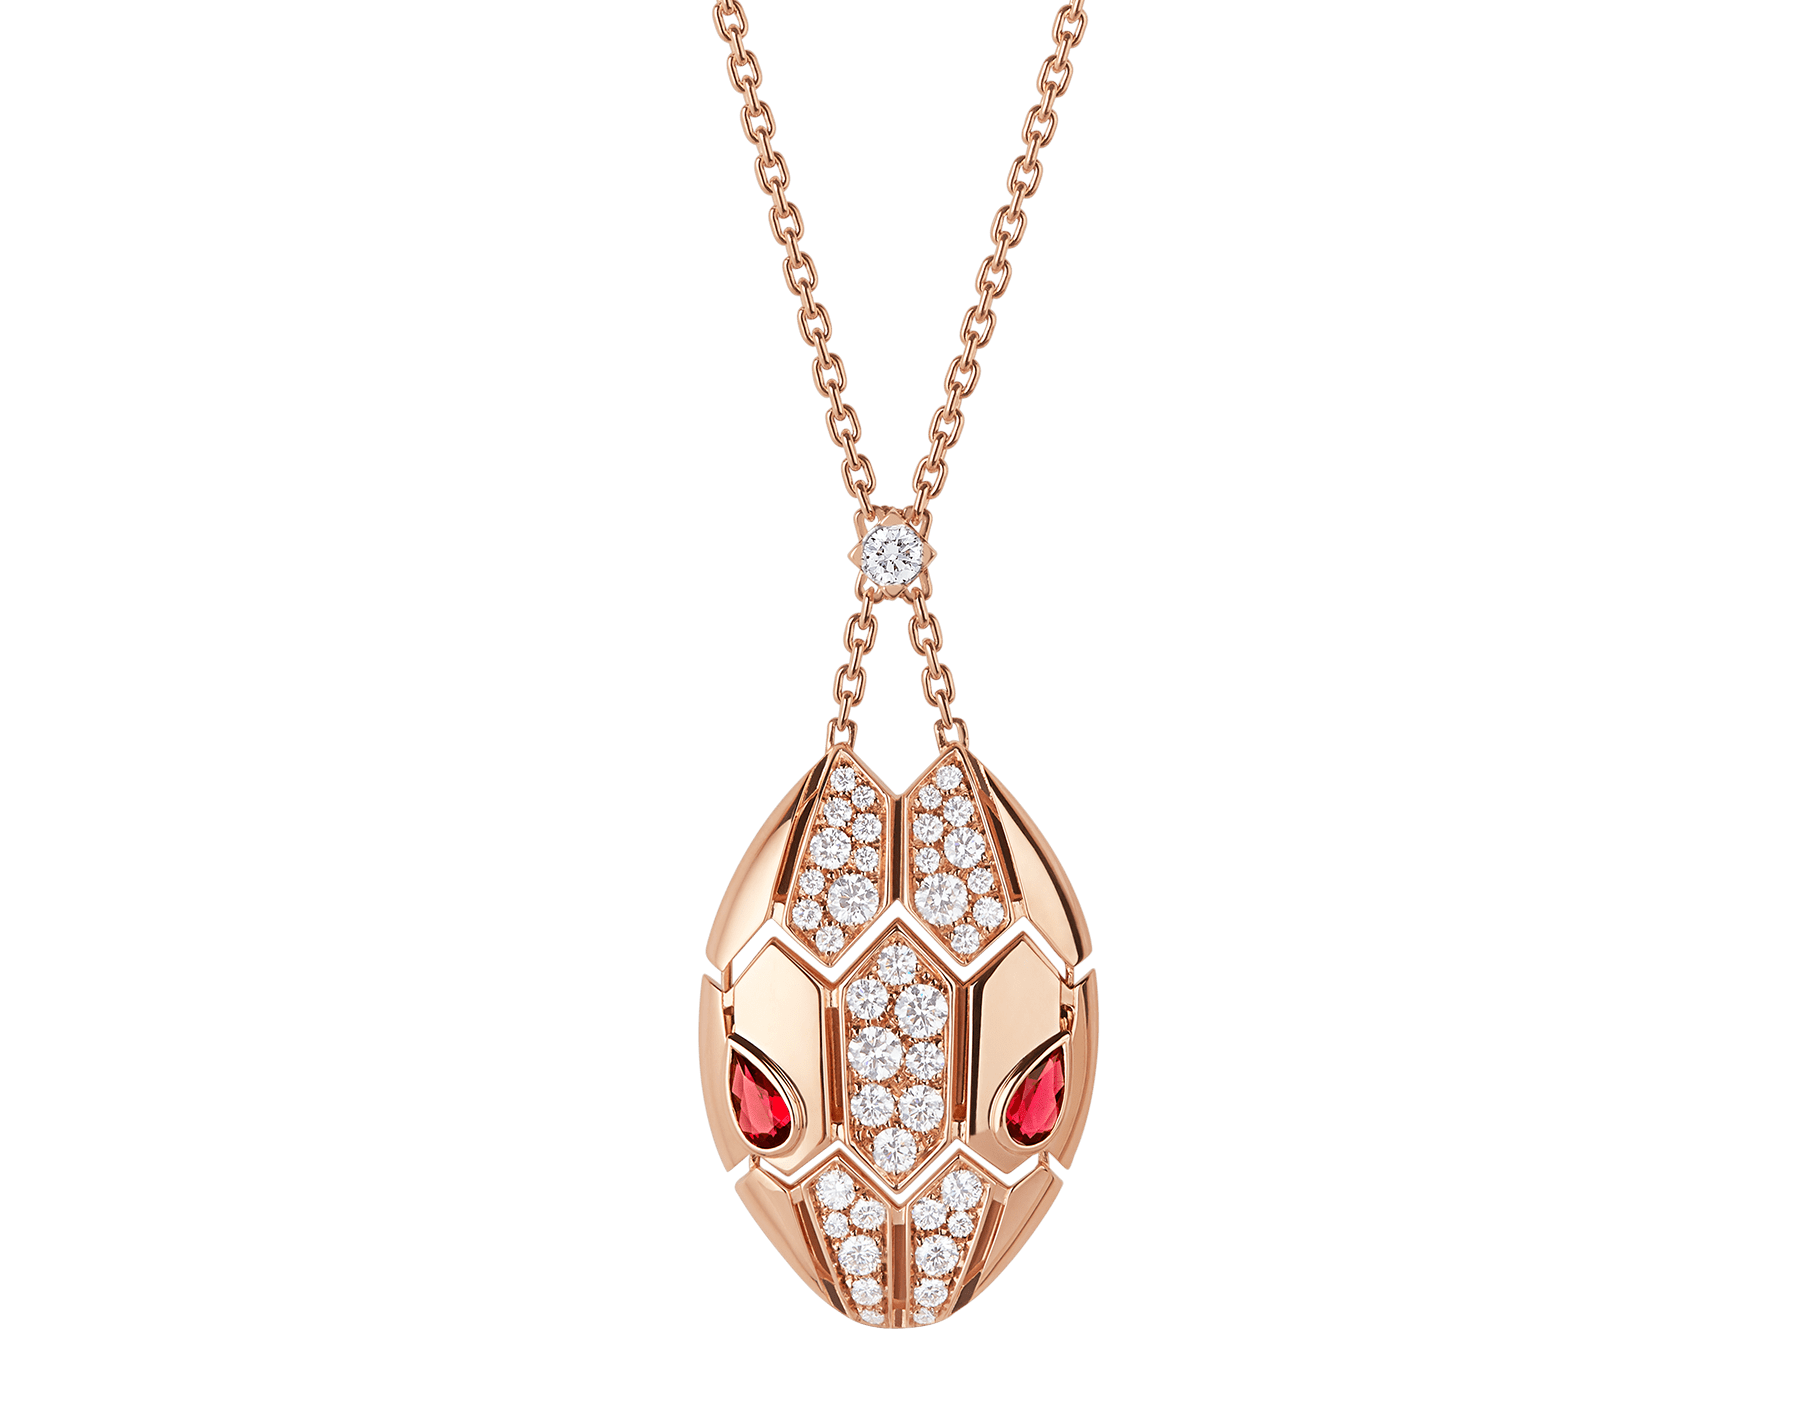 bvlgari snake necklace